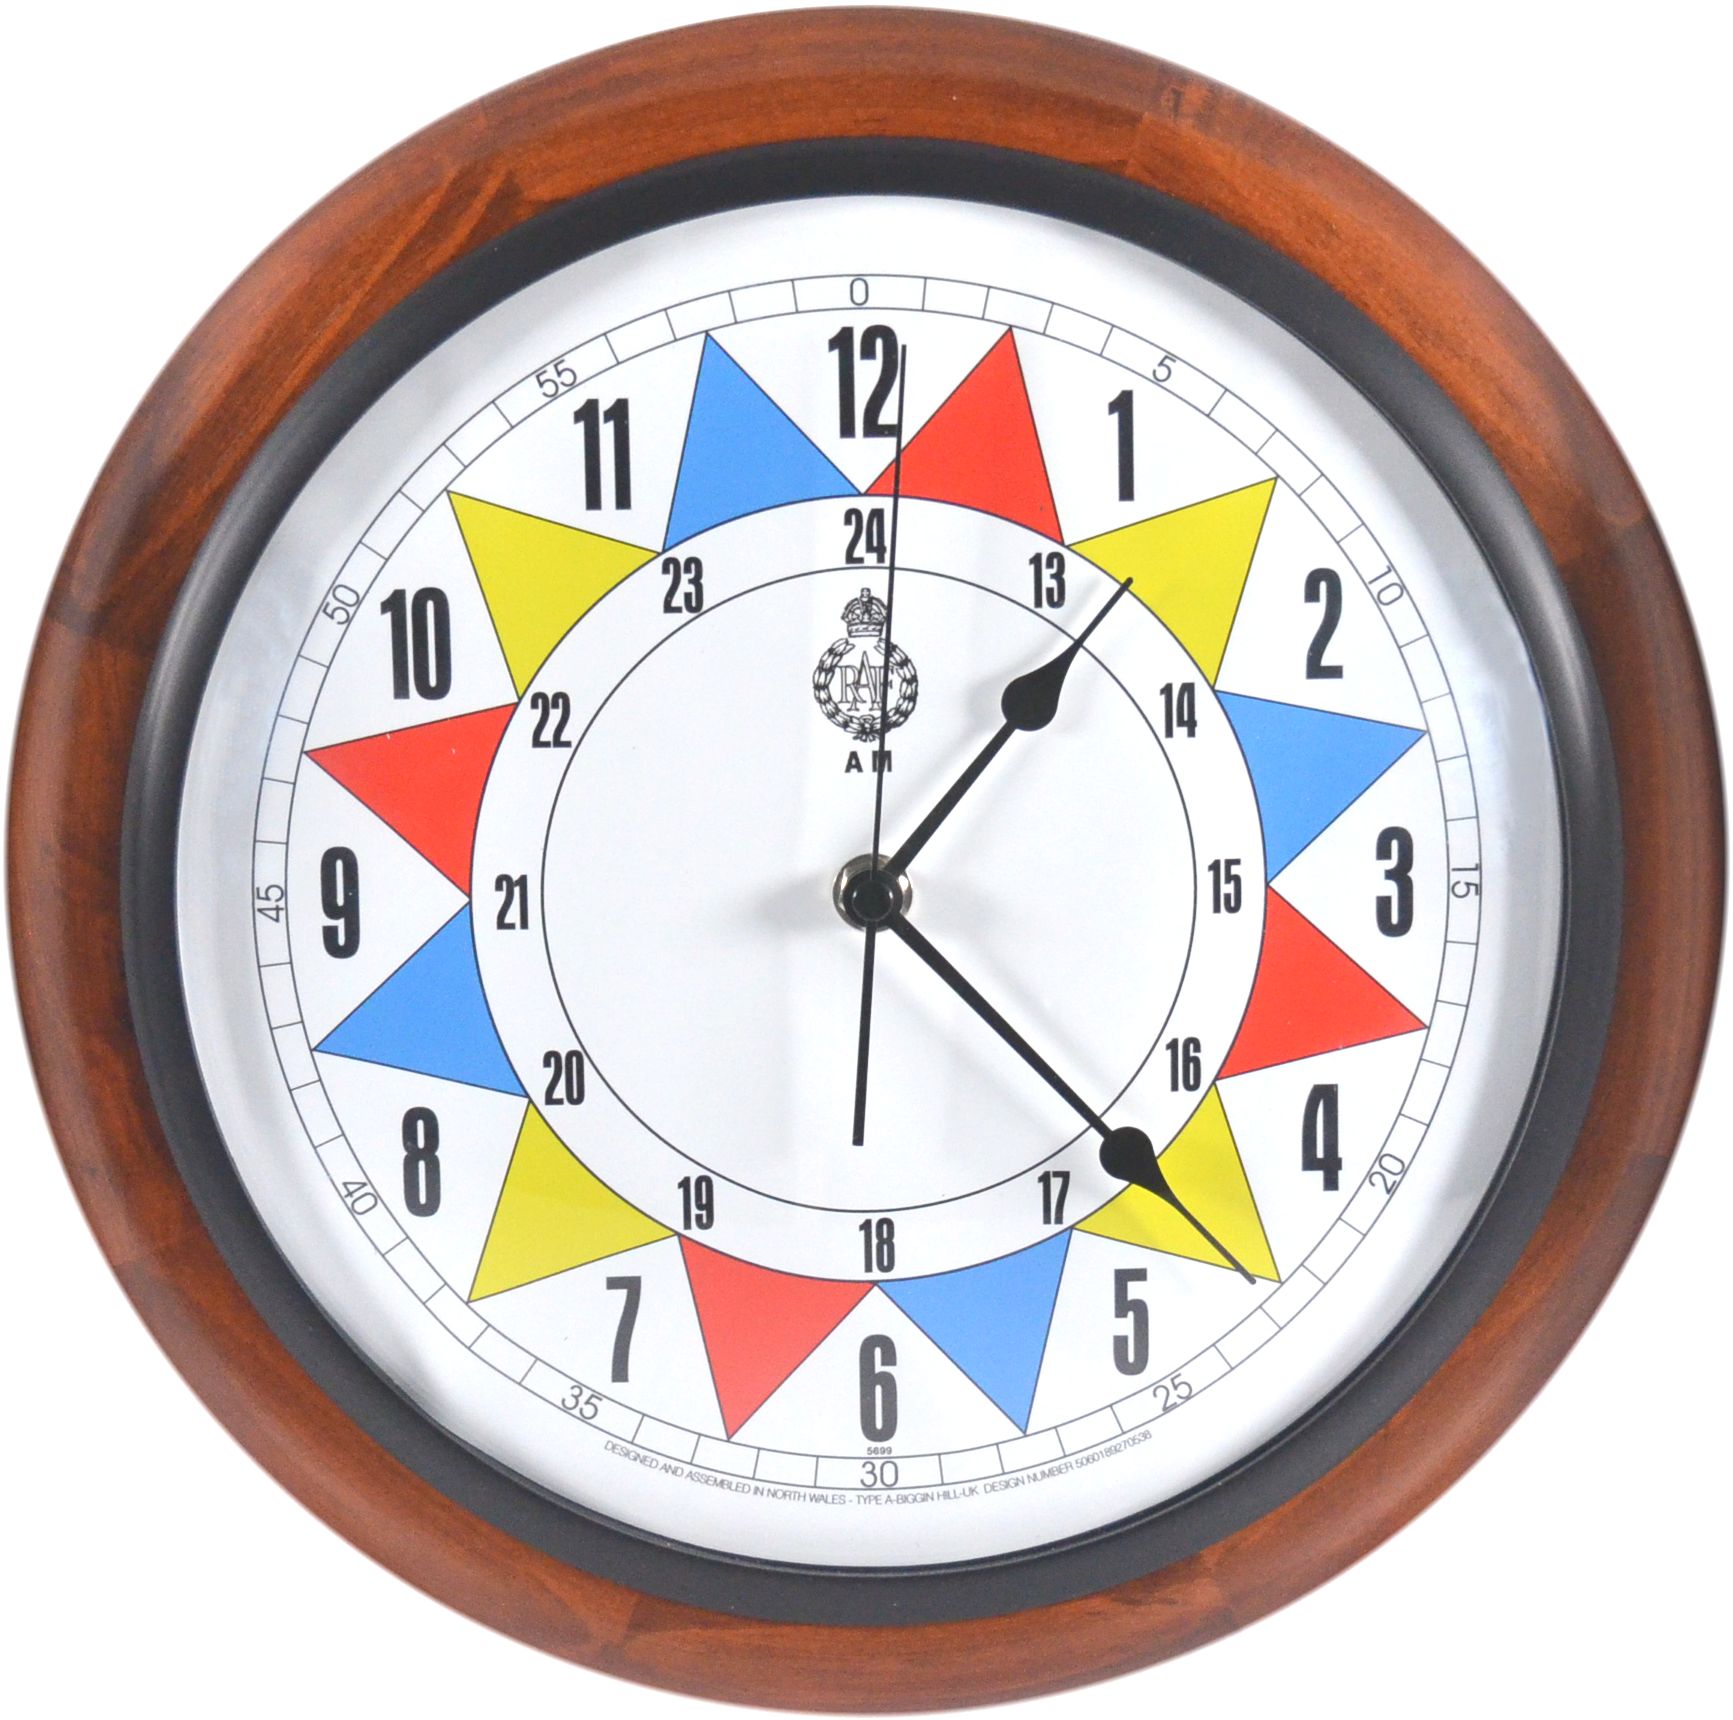 Dayclox Updated Original Memory Loss Digital Calendar Day Clock/Dementia New 